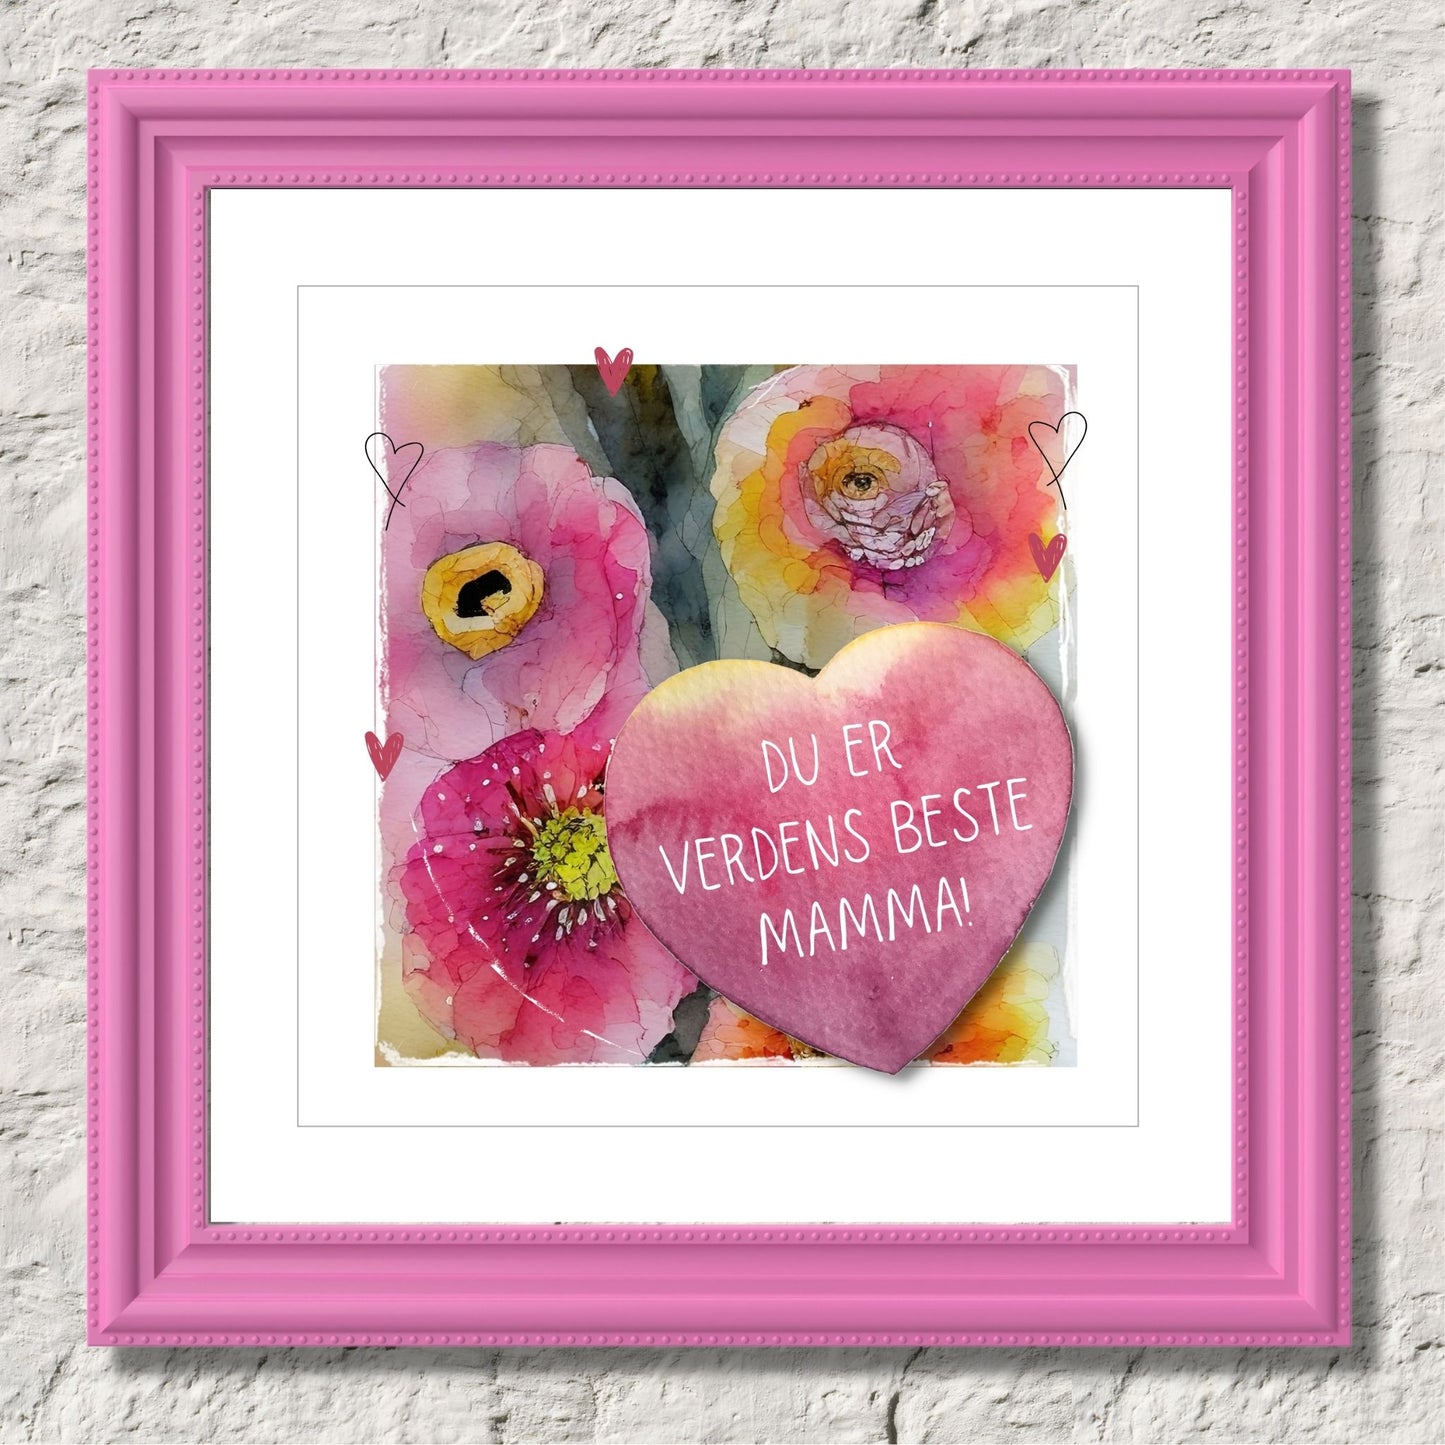 Grafisk plakat med et rosa hjerte påført tekst "Du er verdens beste mamma". Bagrunn i cerise og guloransje blomster. Kortet har en hvit kant runt på 1,5 cm. Illustrasjon av plakat i rosa ramme.